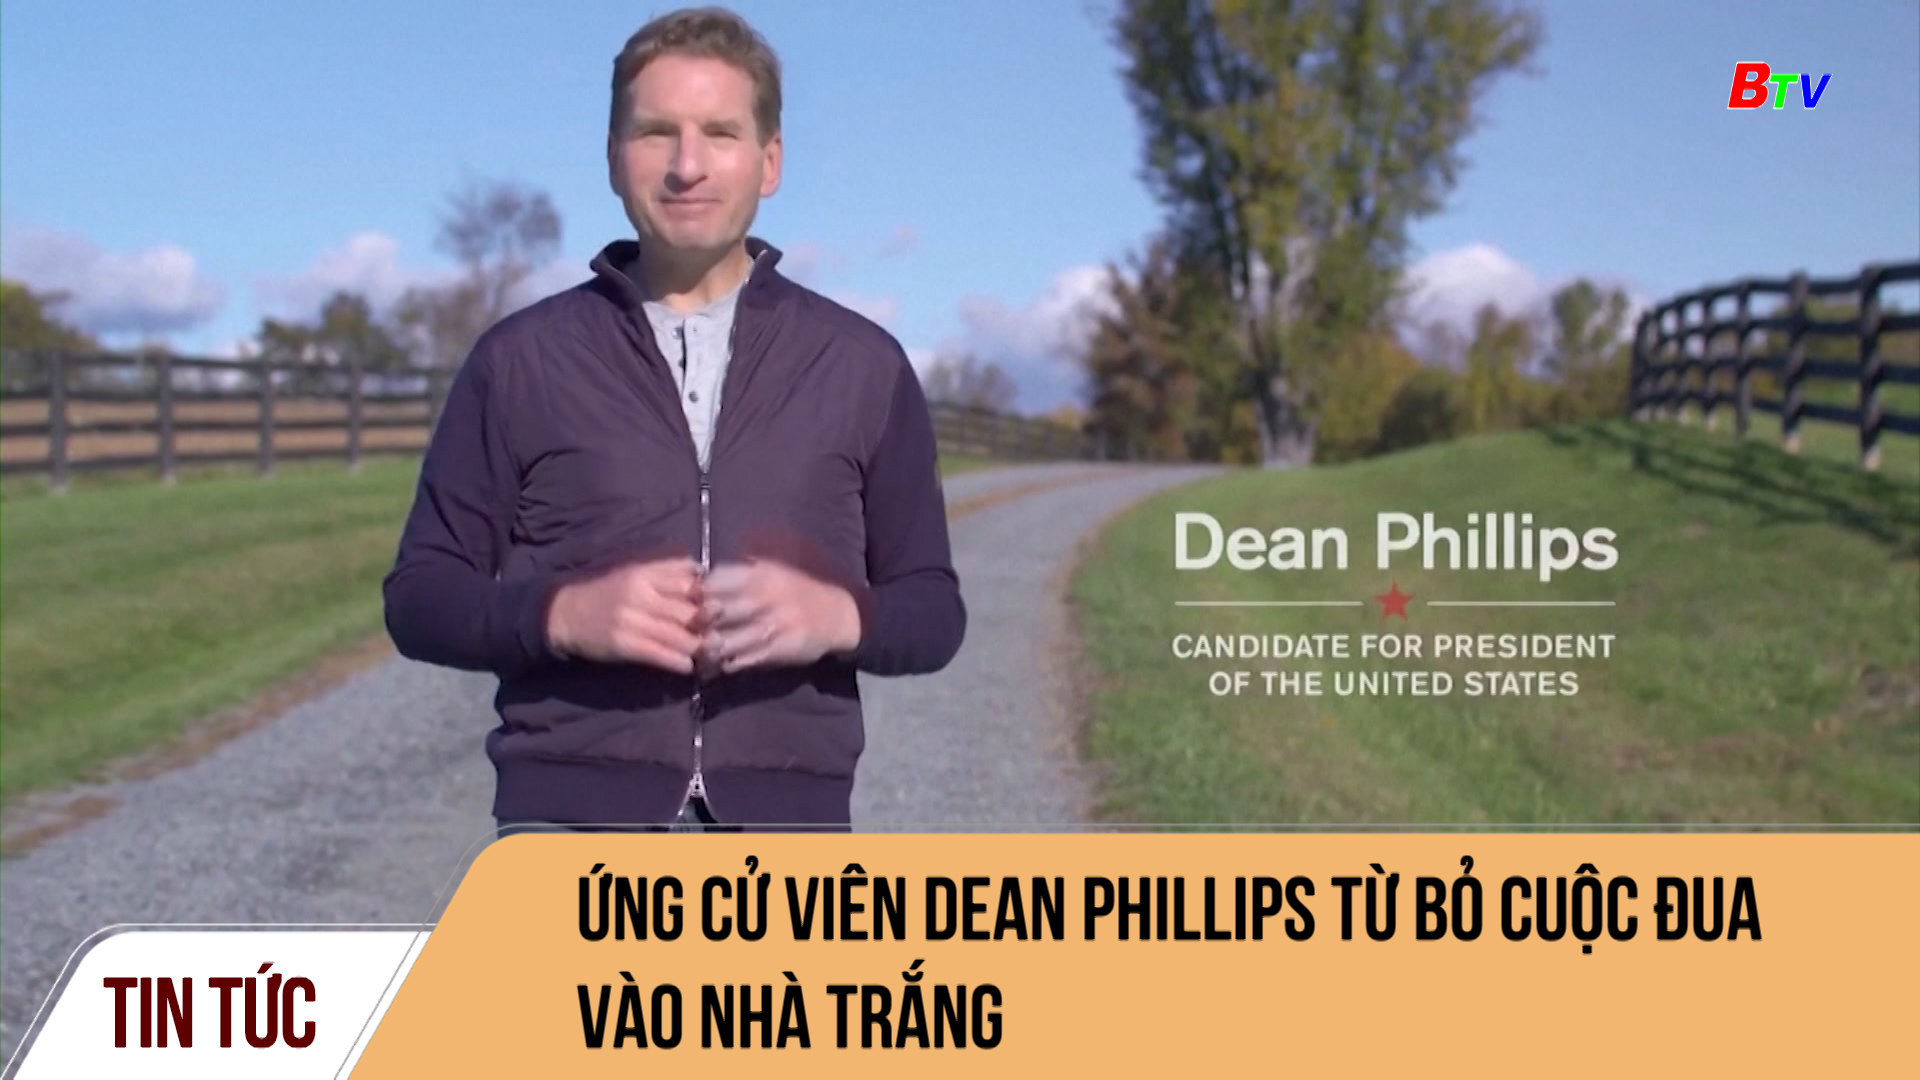 Ứng cử viên Dean Phillips từ bỏ cuộc đua vào nhà trắng	